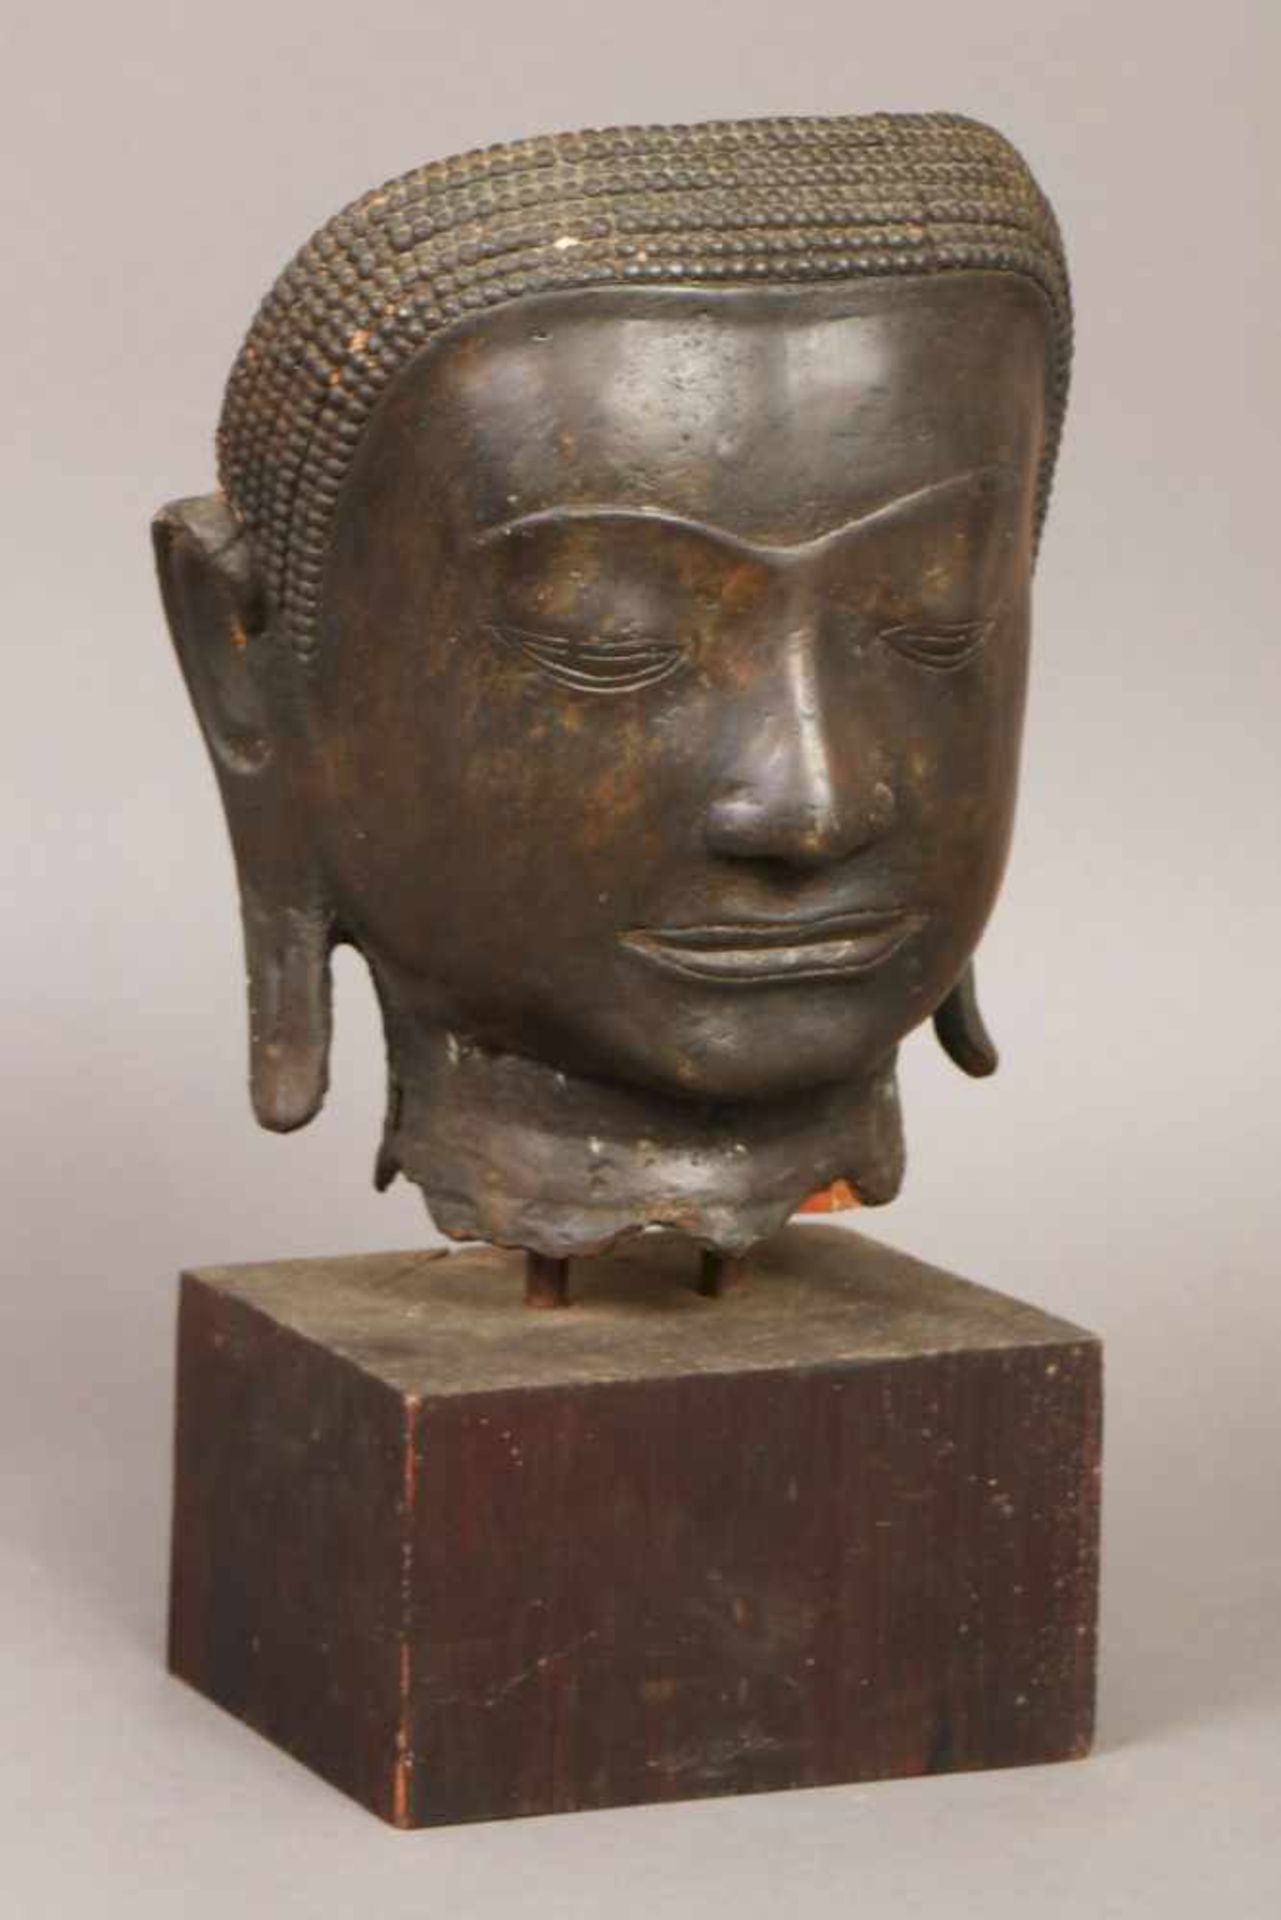 Asiatischer BuddhakopfBronze, dunkel patiniert, wohl 19. Jahrhundert, Fragment einer Figur, auf